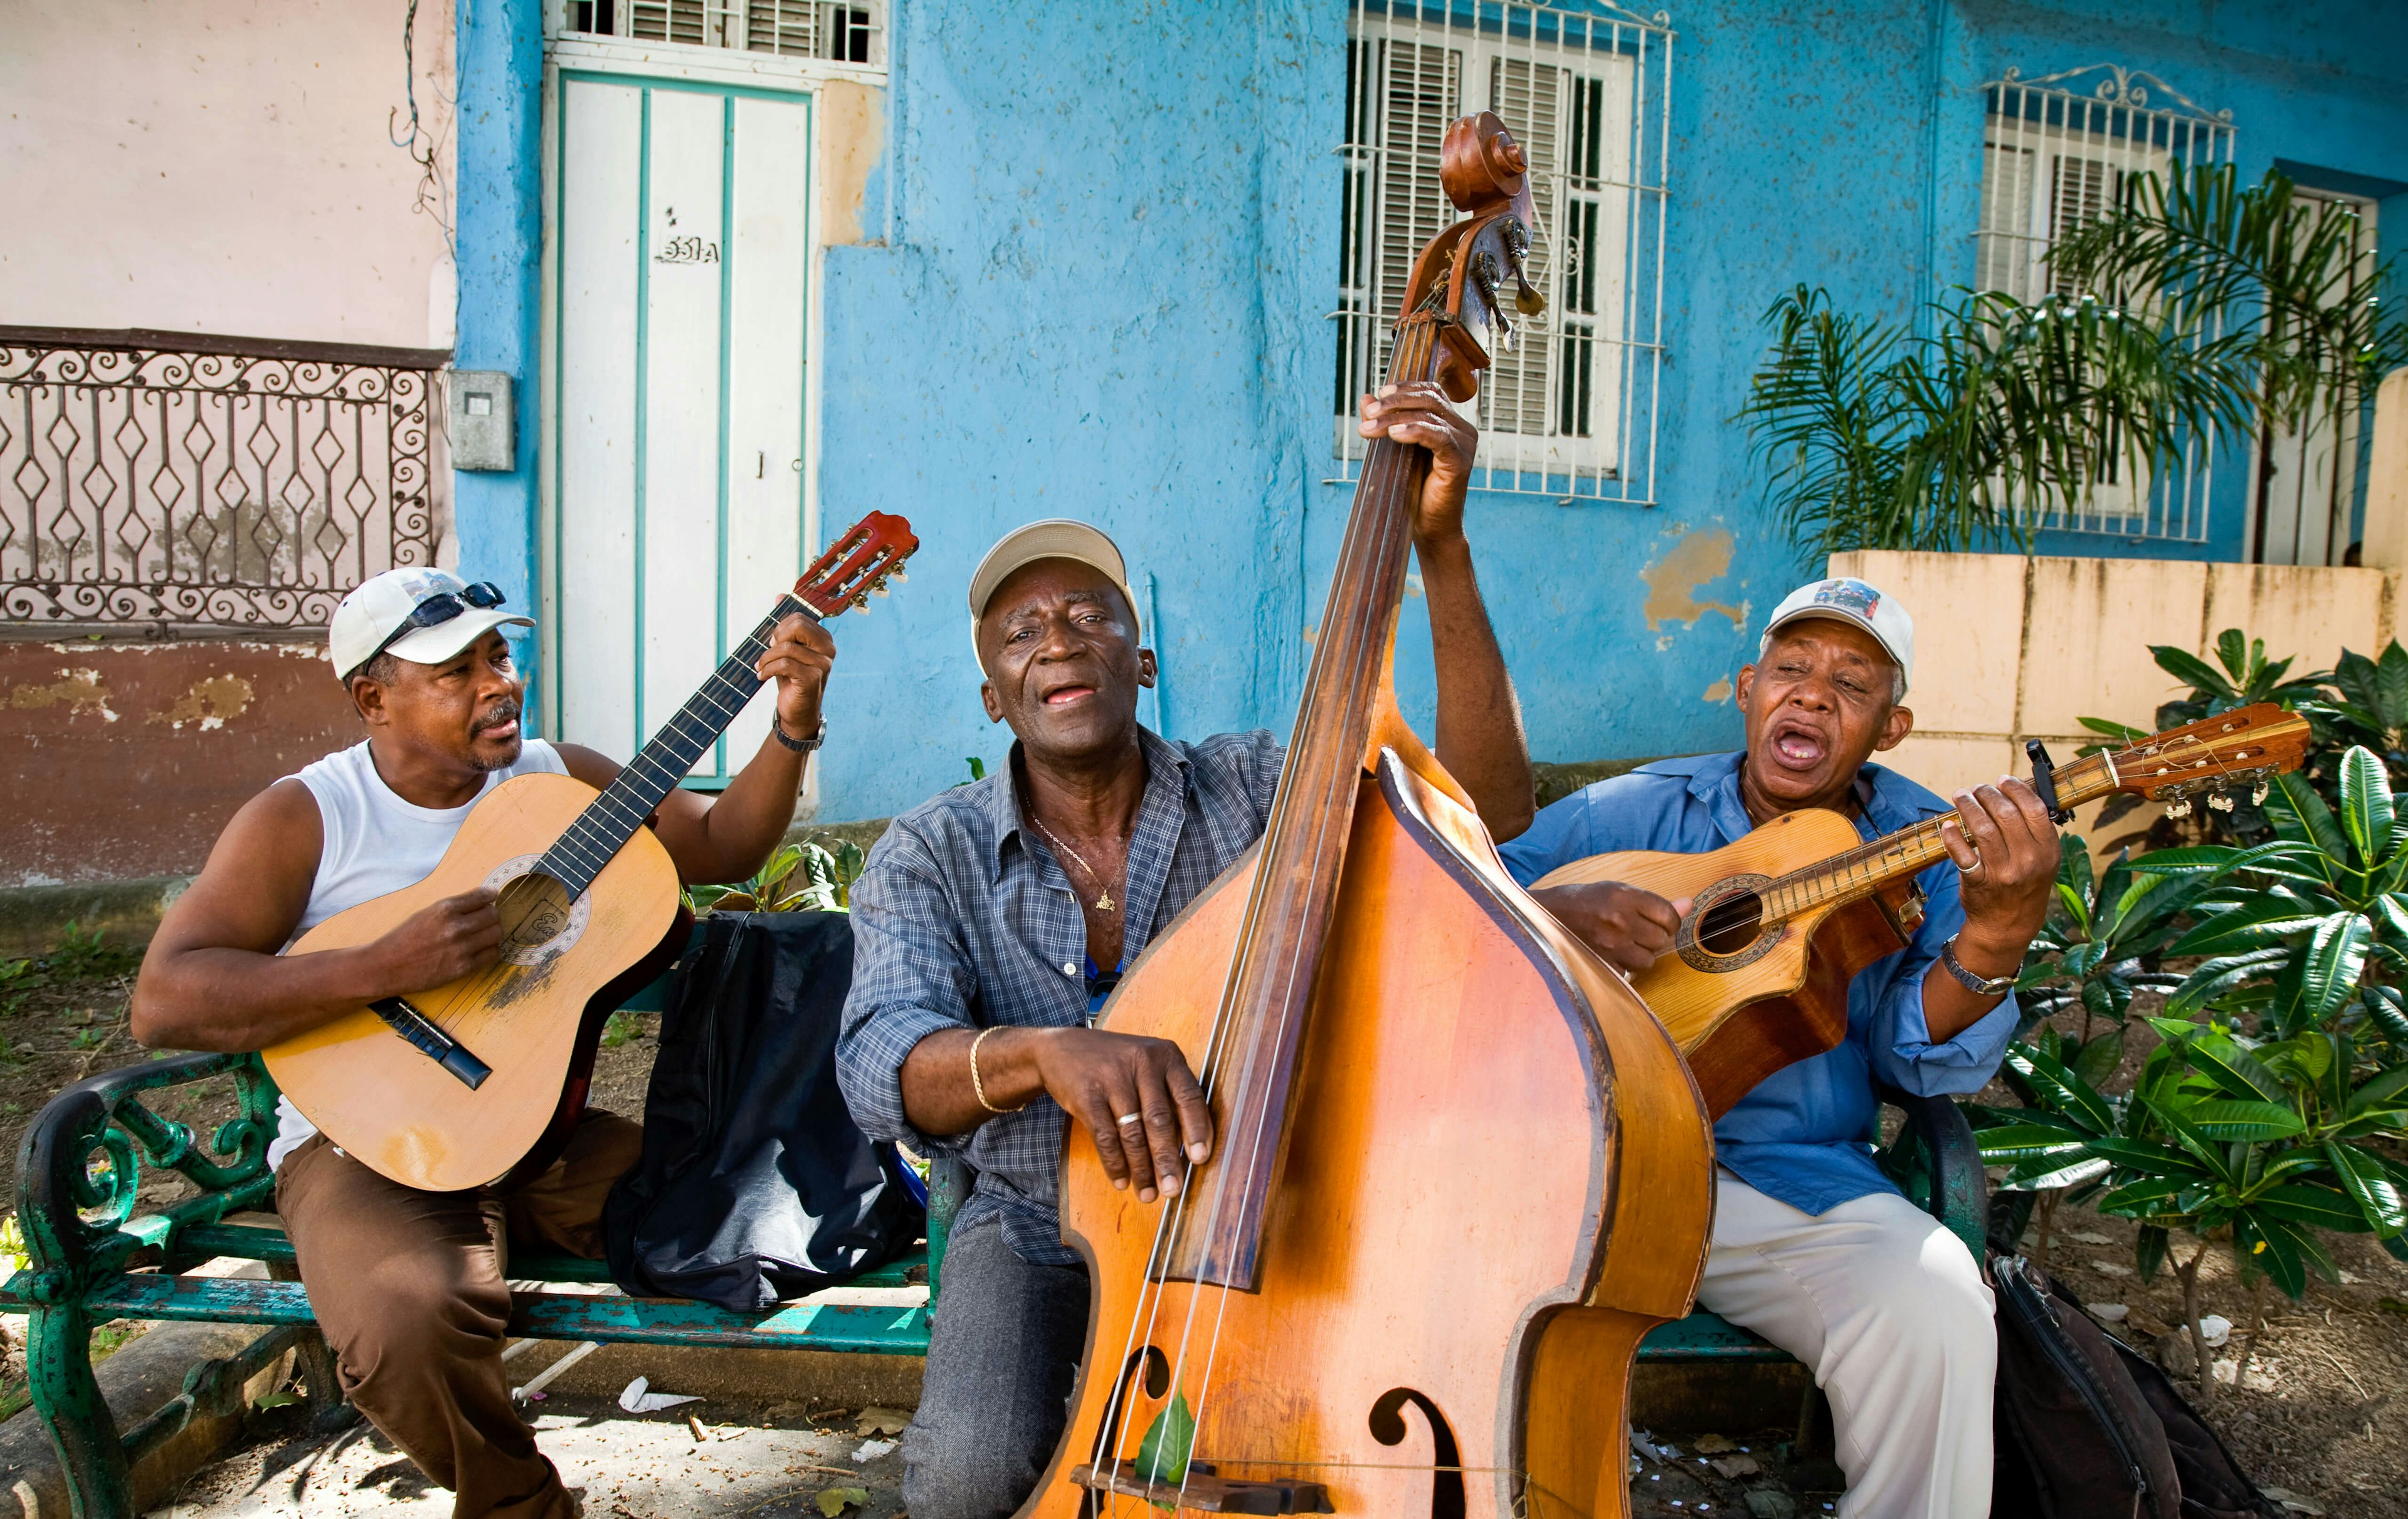 Street musicians in Santiago de Cuba, Cuba.